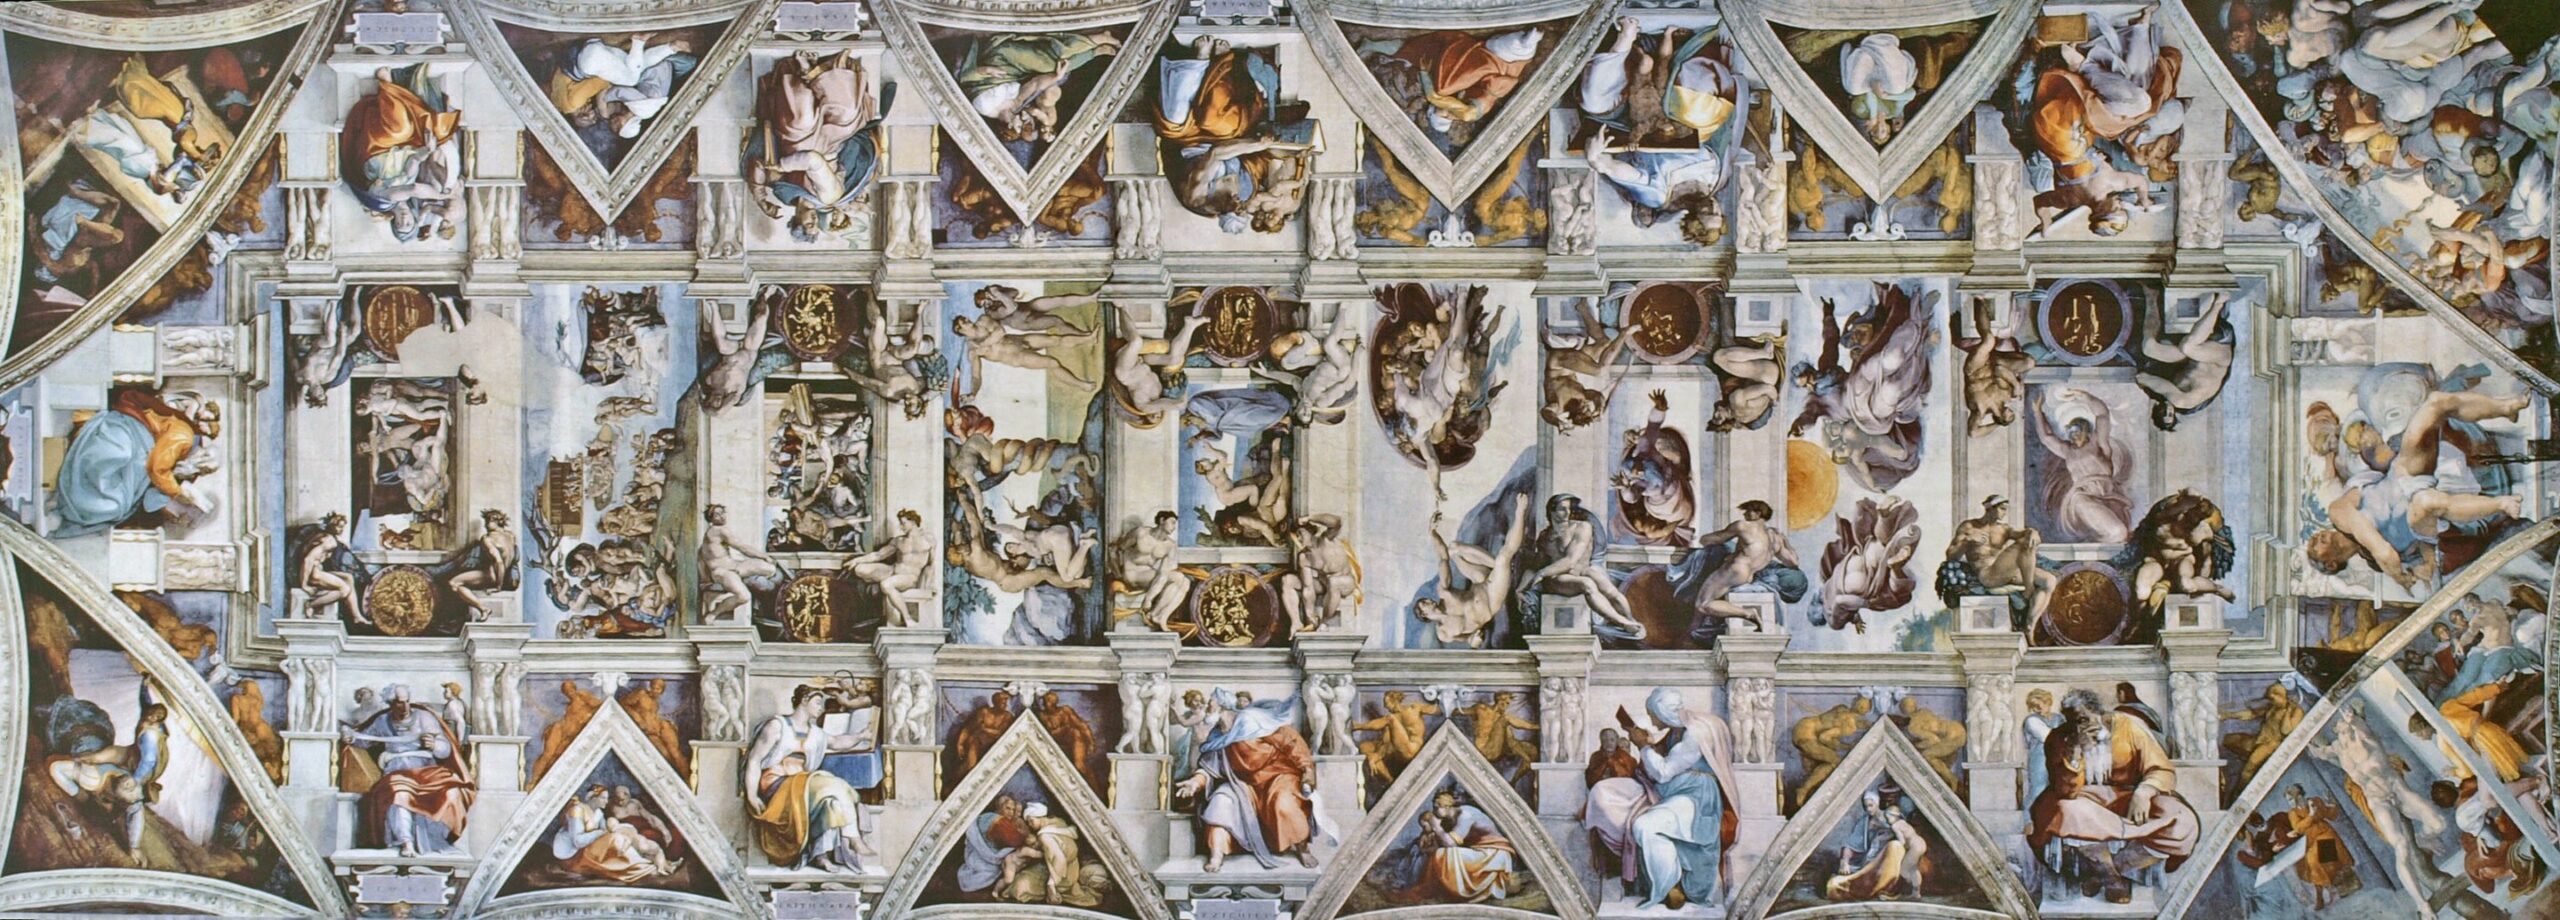 Bóveda de la Capilla Sixtina, 1508-1512, fresco, 4093 × 1341 cm, Vaticano.